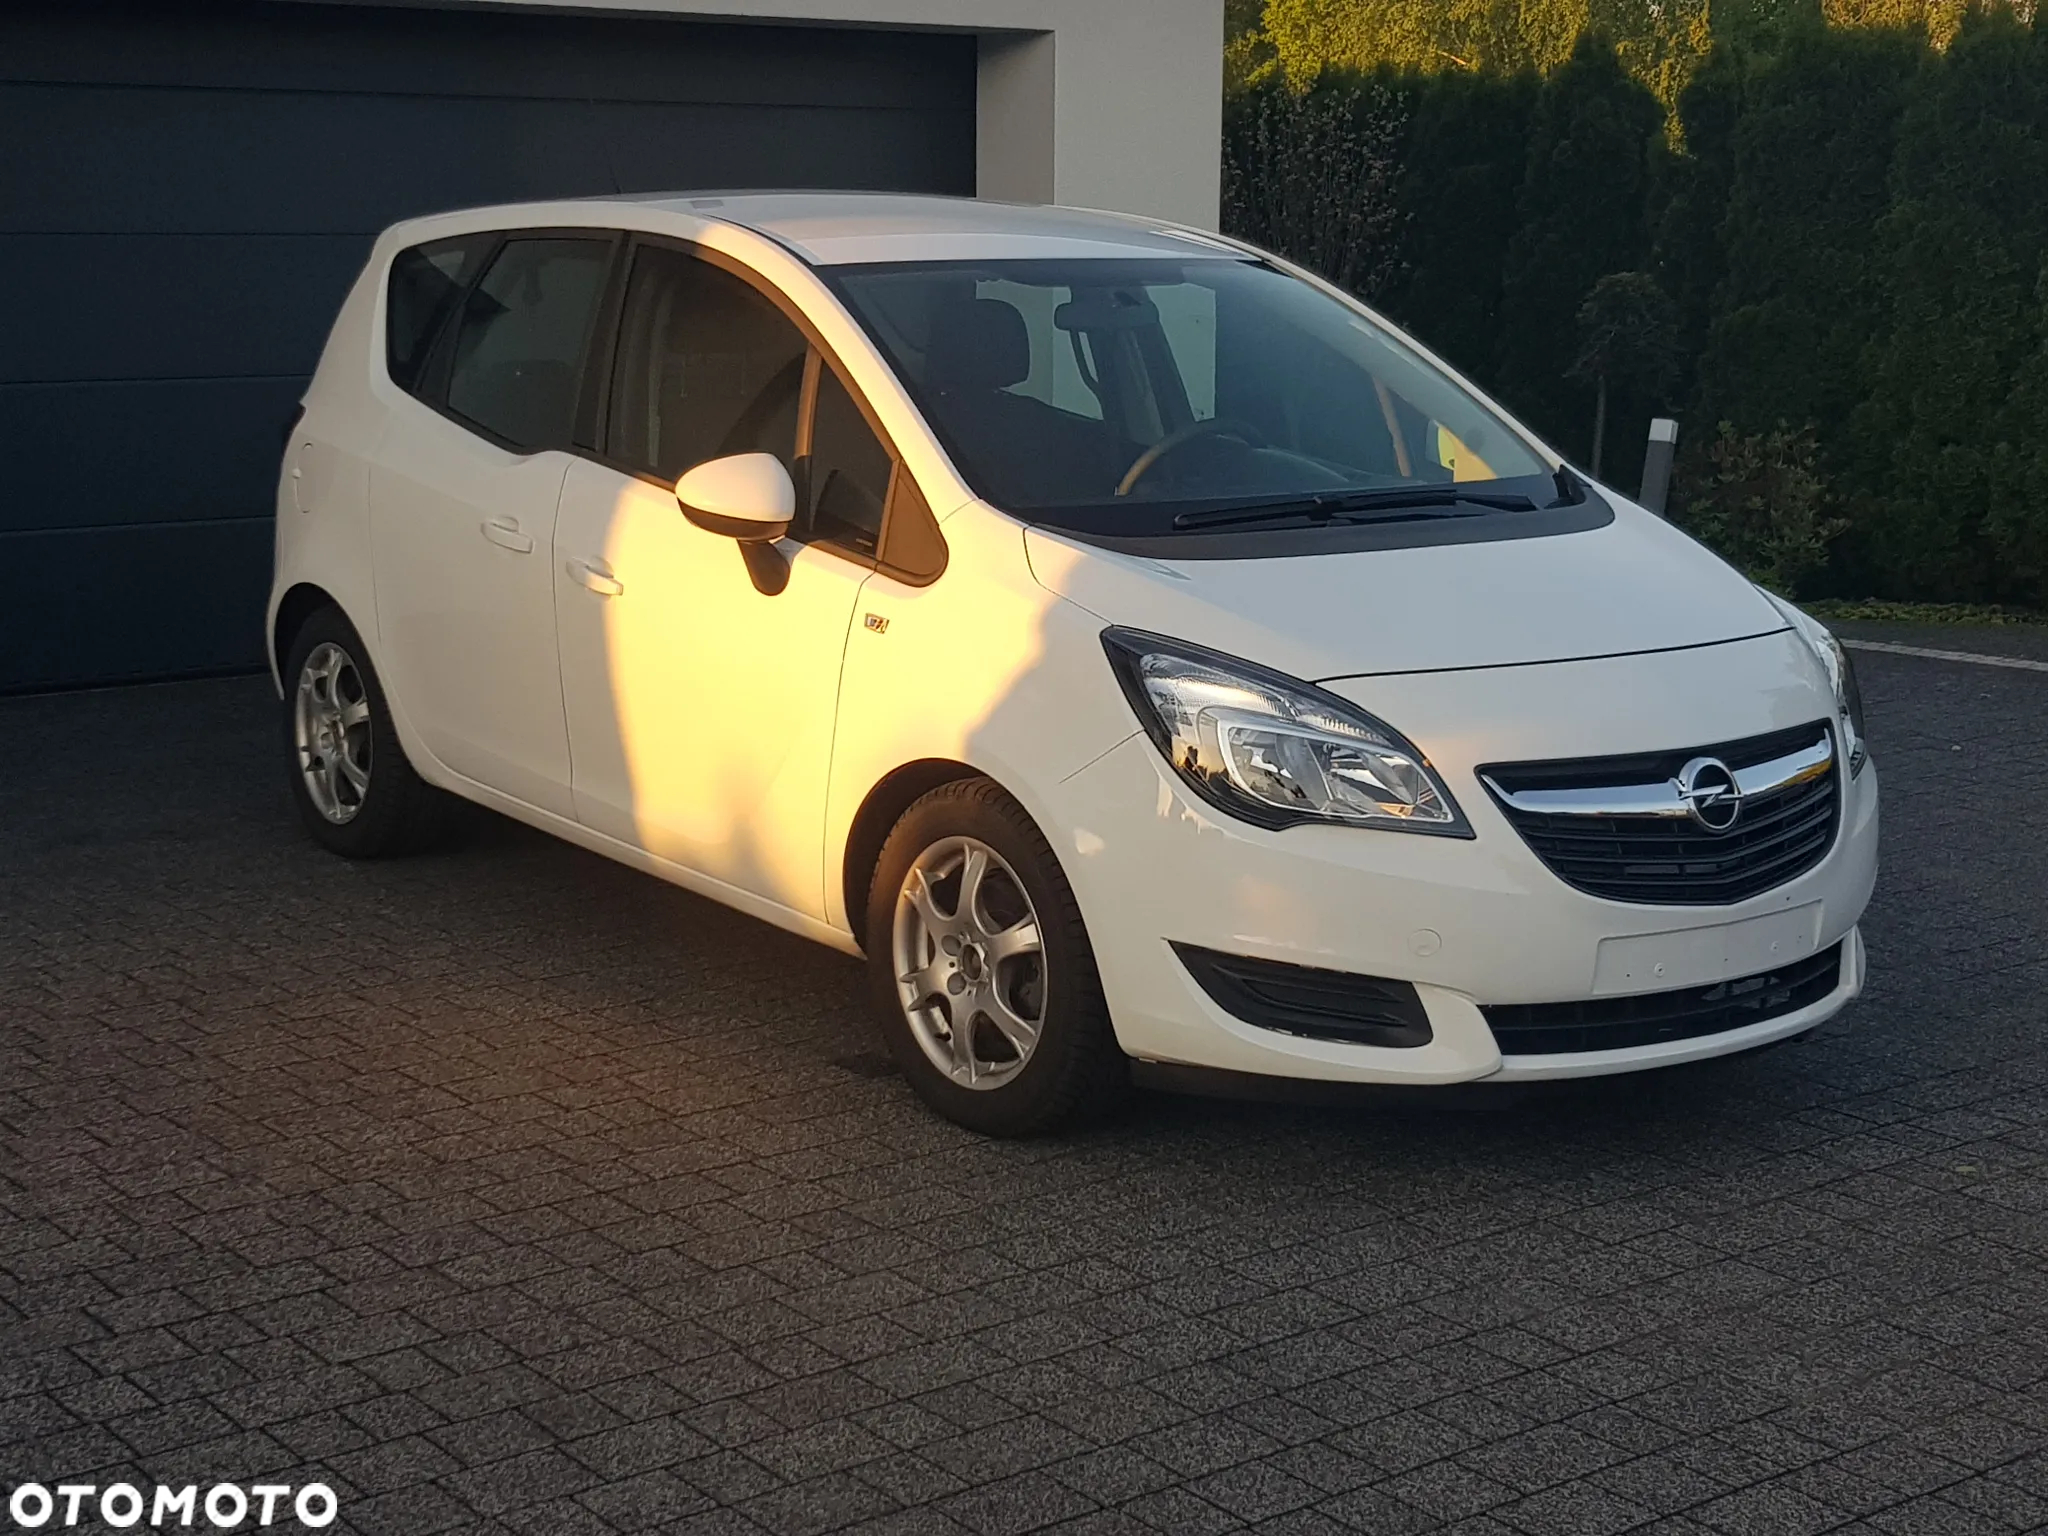 Opel Meriva 1.4 Style - 2